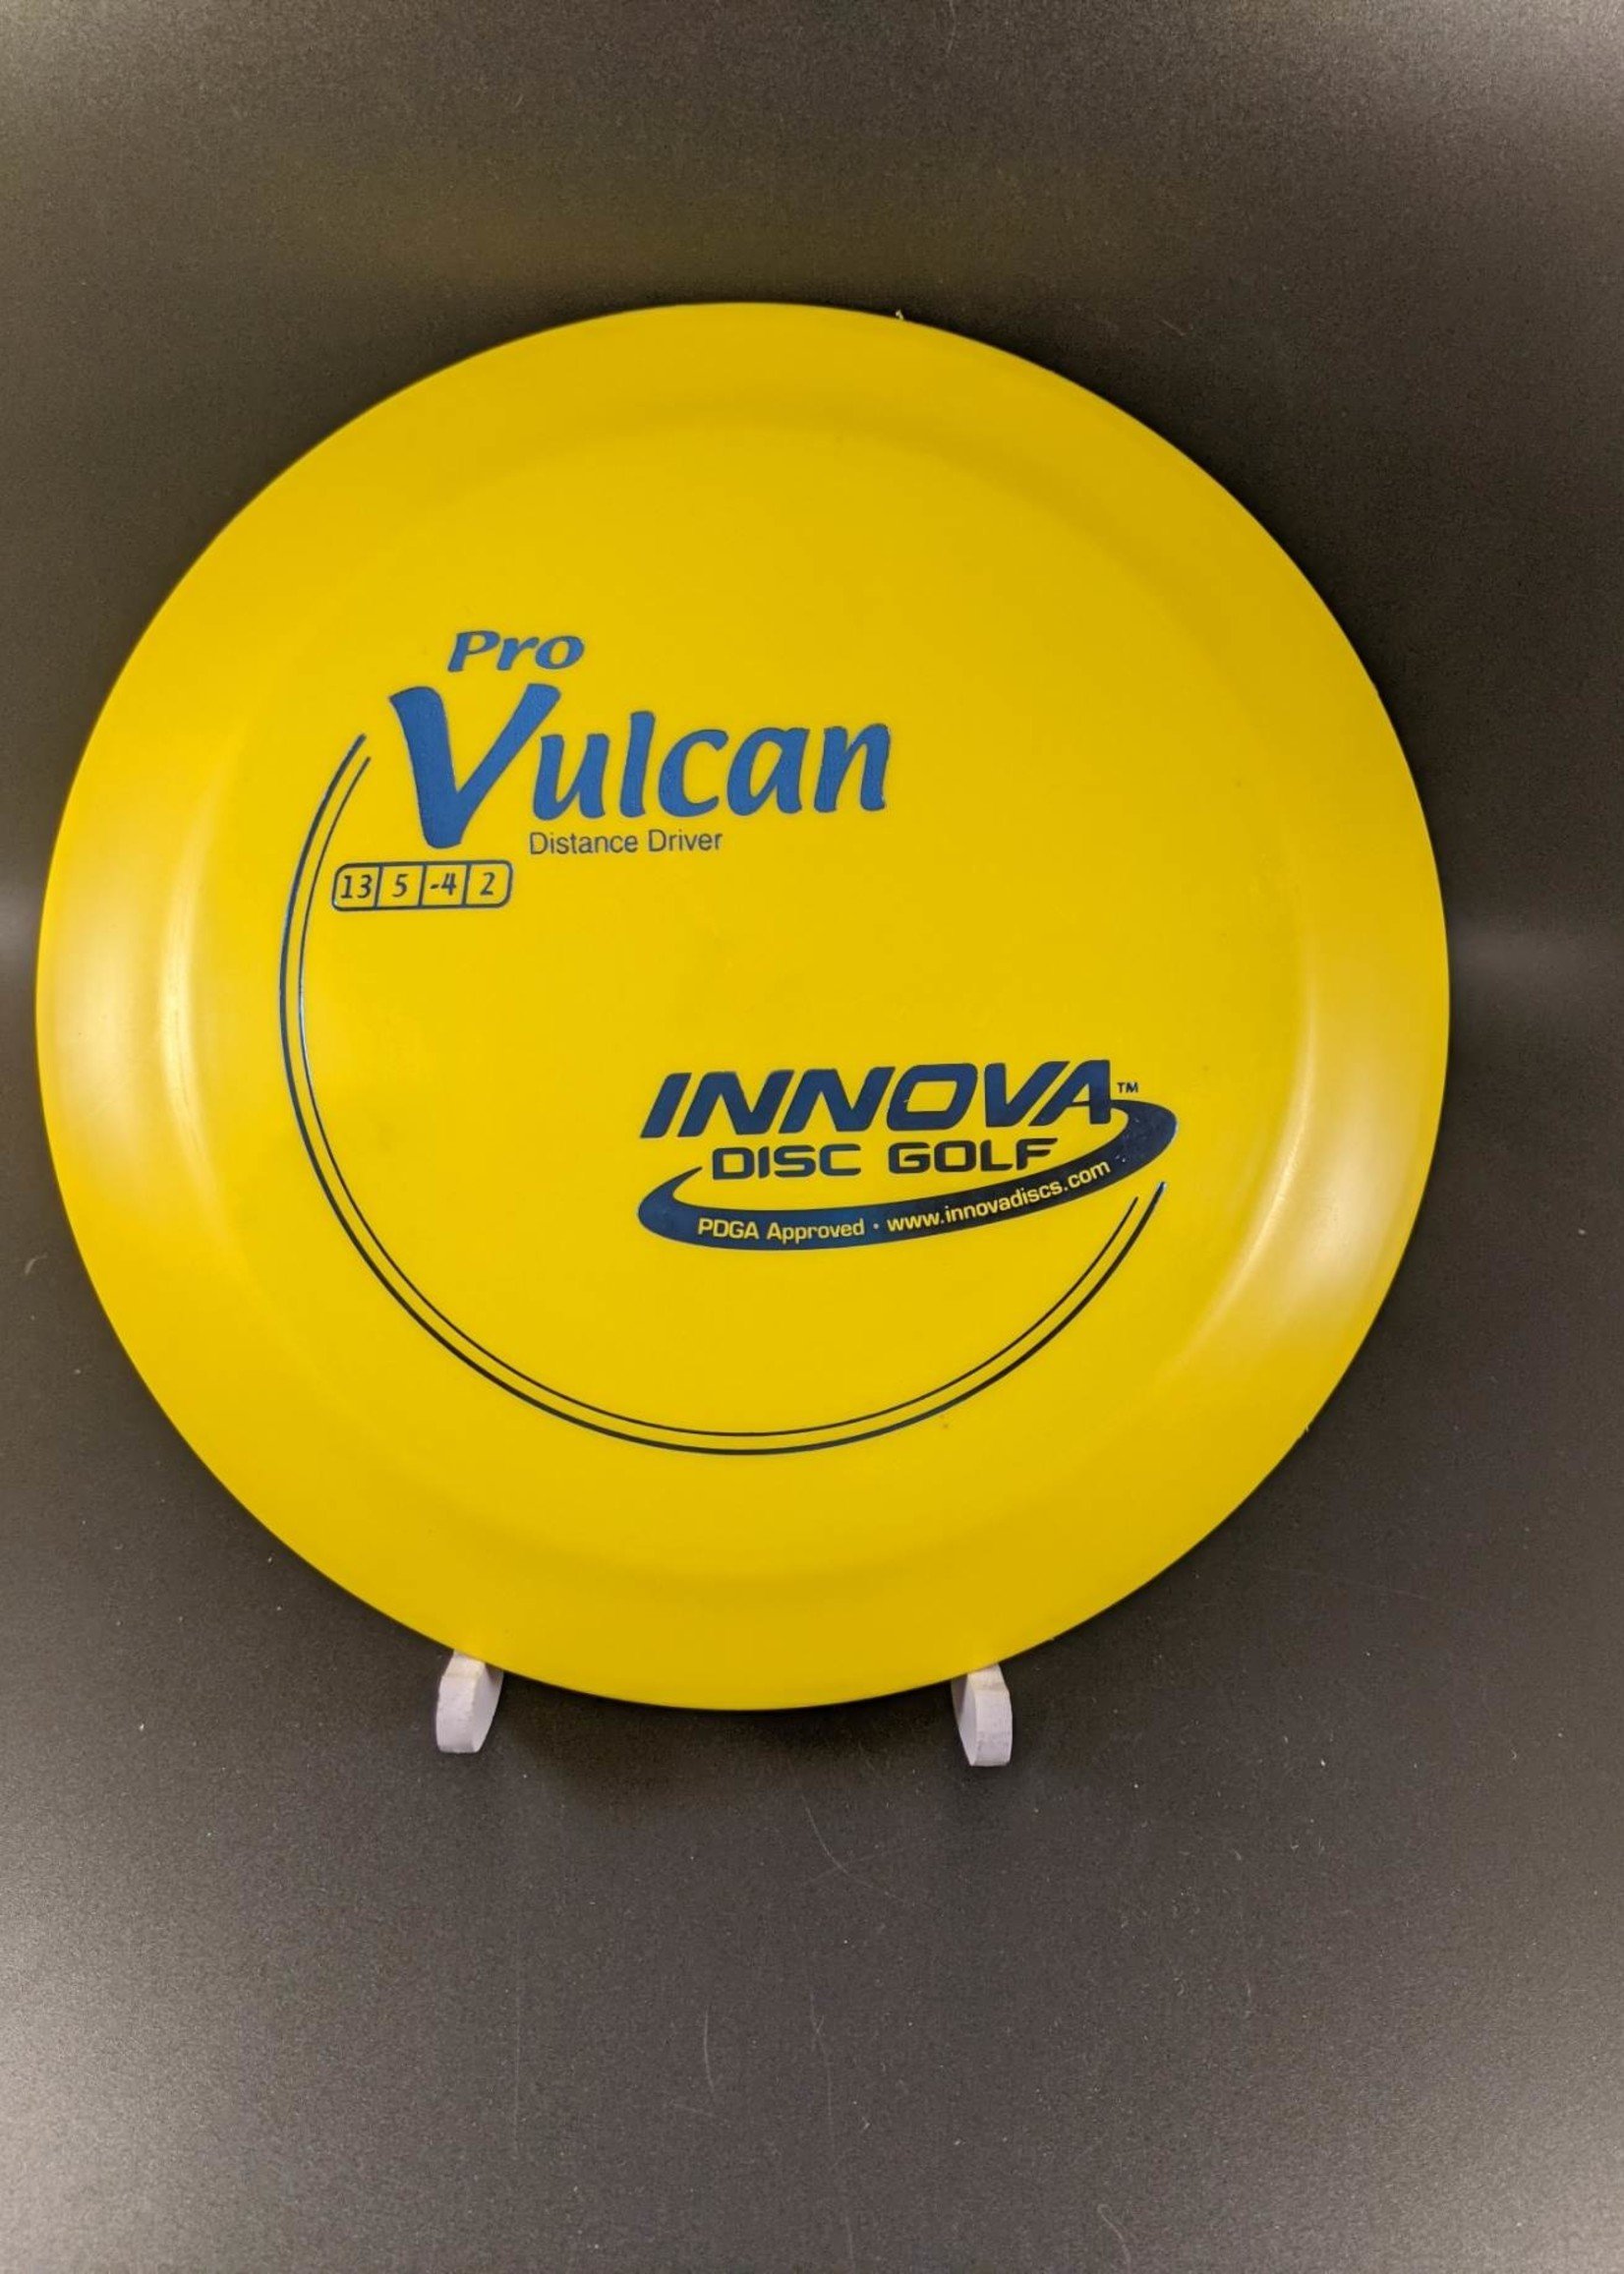 Innova Innova Pro Vulcan